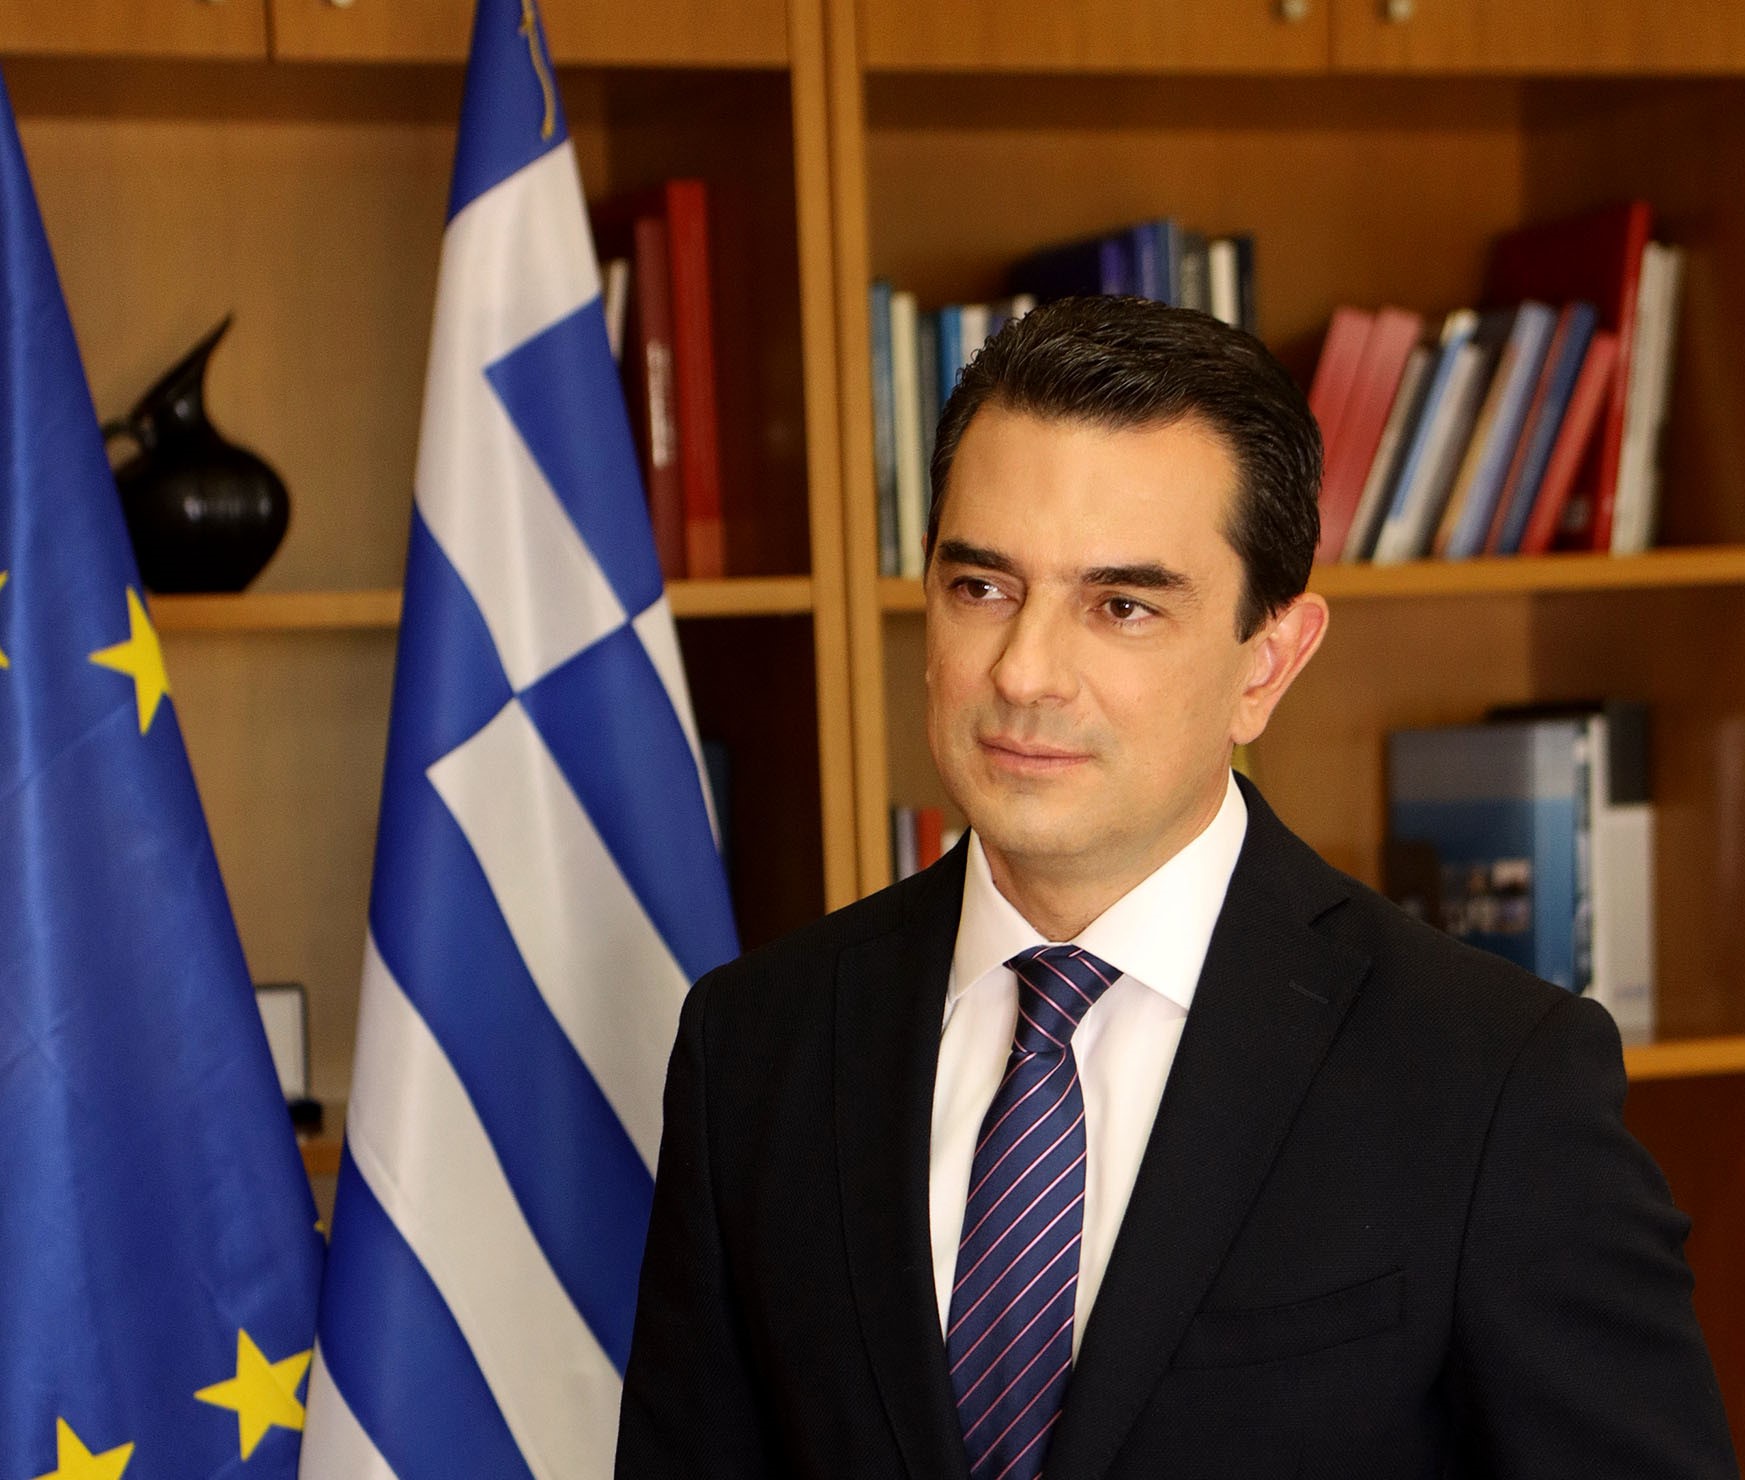 Σκρέκας – Ψήφος εμπιστοσύνης στην ελληνική οικονομία η προσφορά του ομίλου ITALGAS